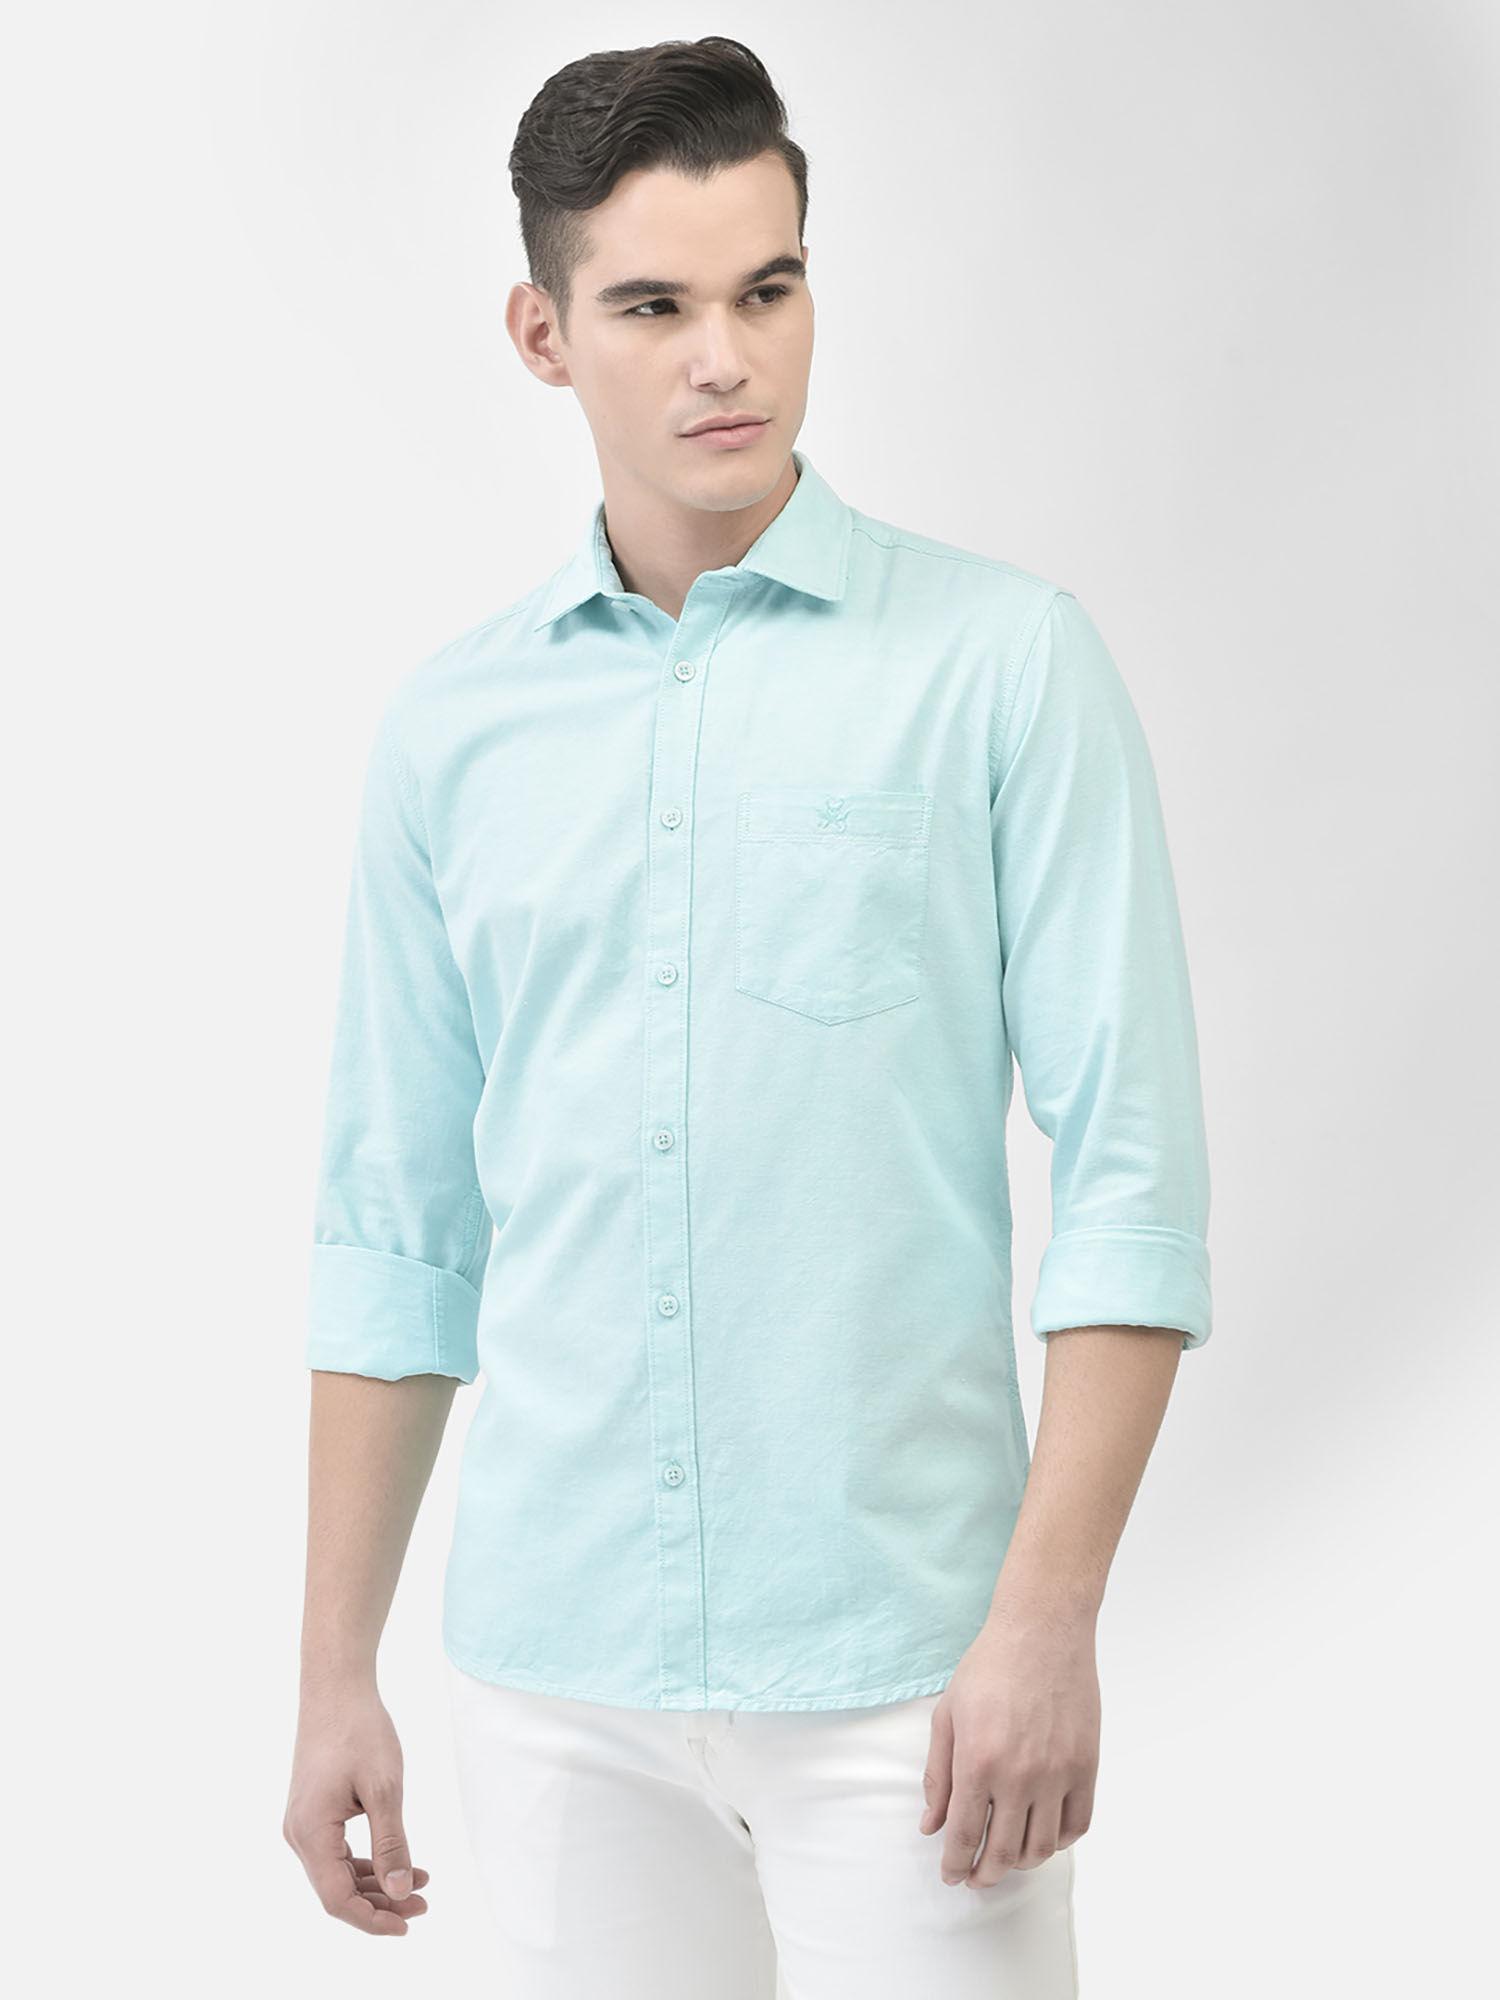 men's mint-green shirt